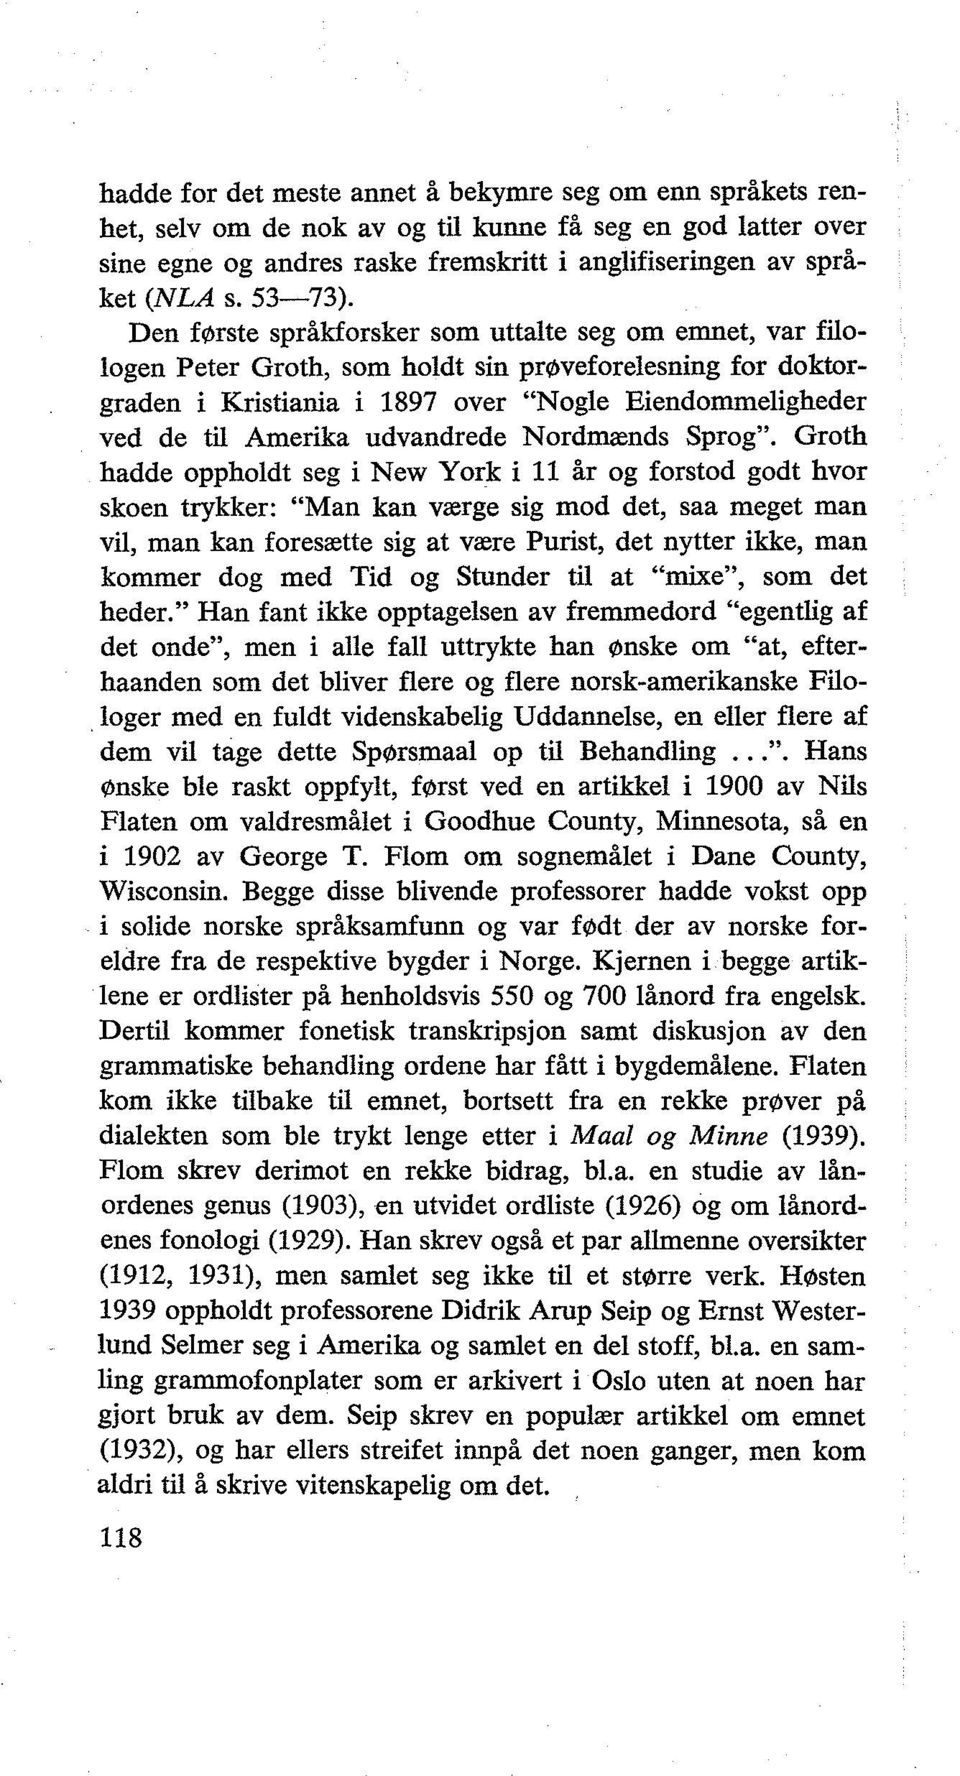 Den f0rste språkforsker som uttalte seg om emnet, var filologen Peter Groth, som holdt sin pr0veforelesning for doktorgraden i Kristiania i 1897 over "Nogle Eiendommeligheder ved de til Amerika